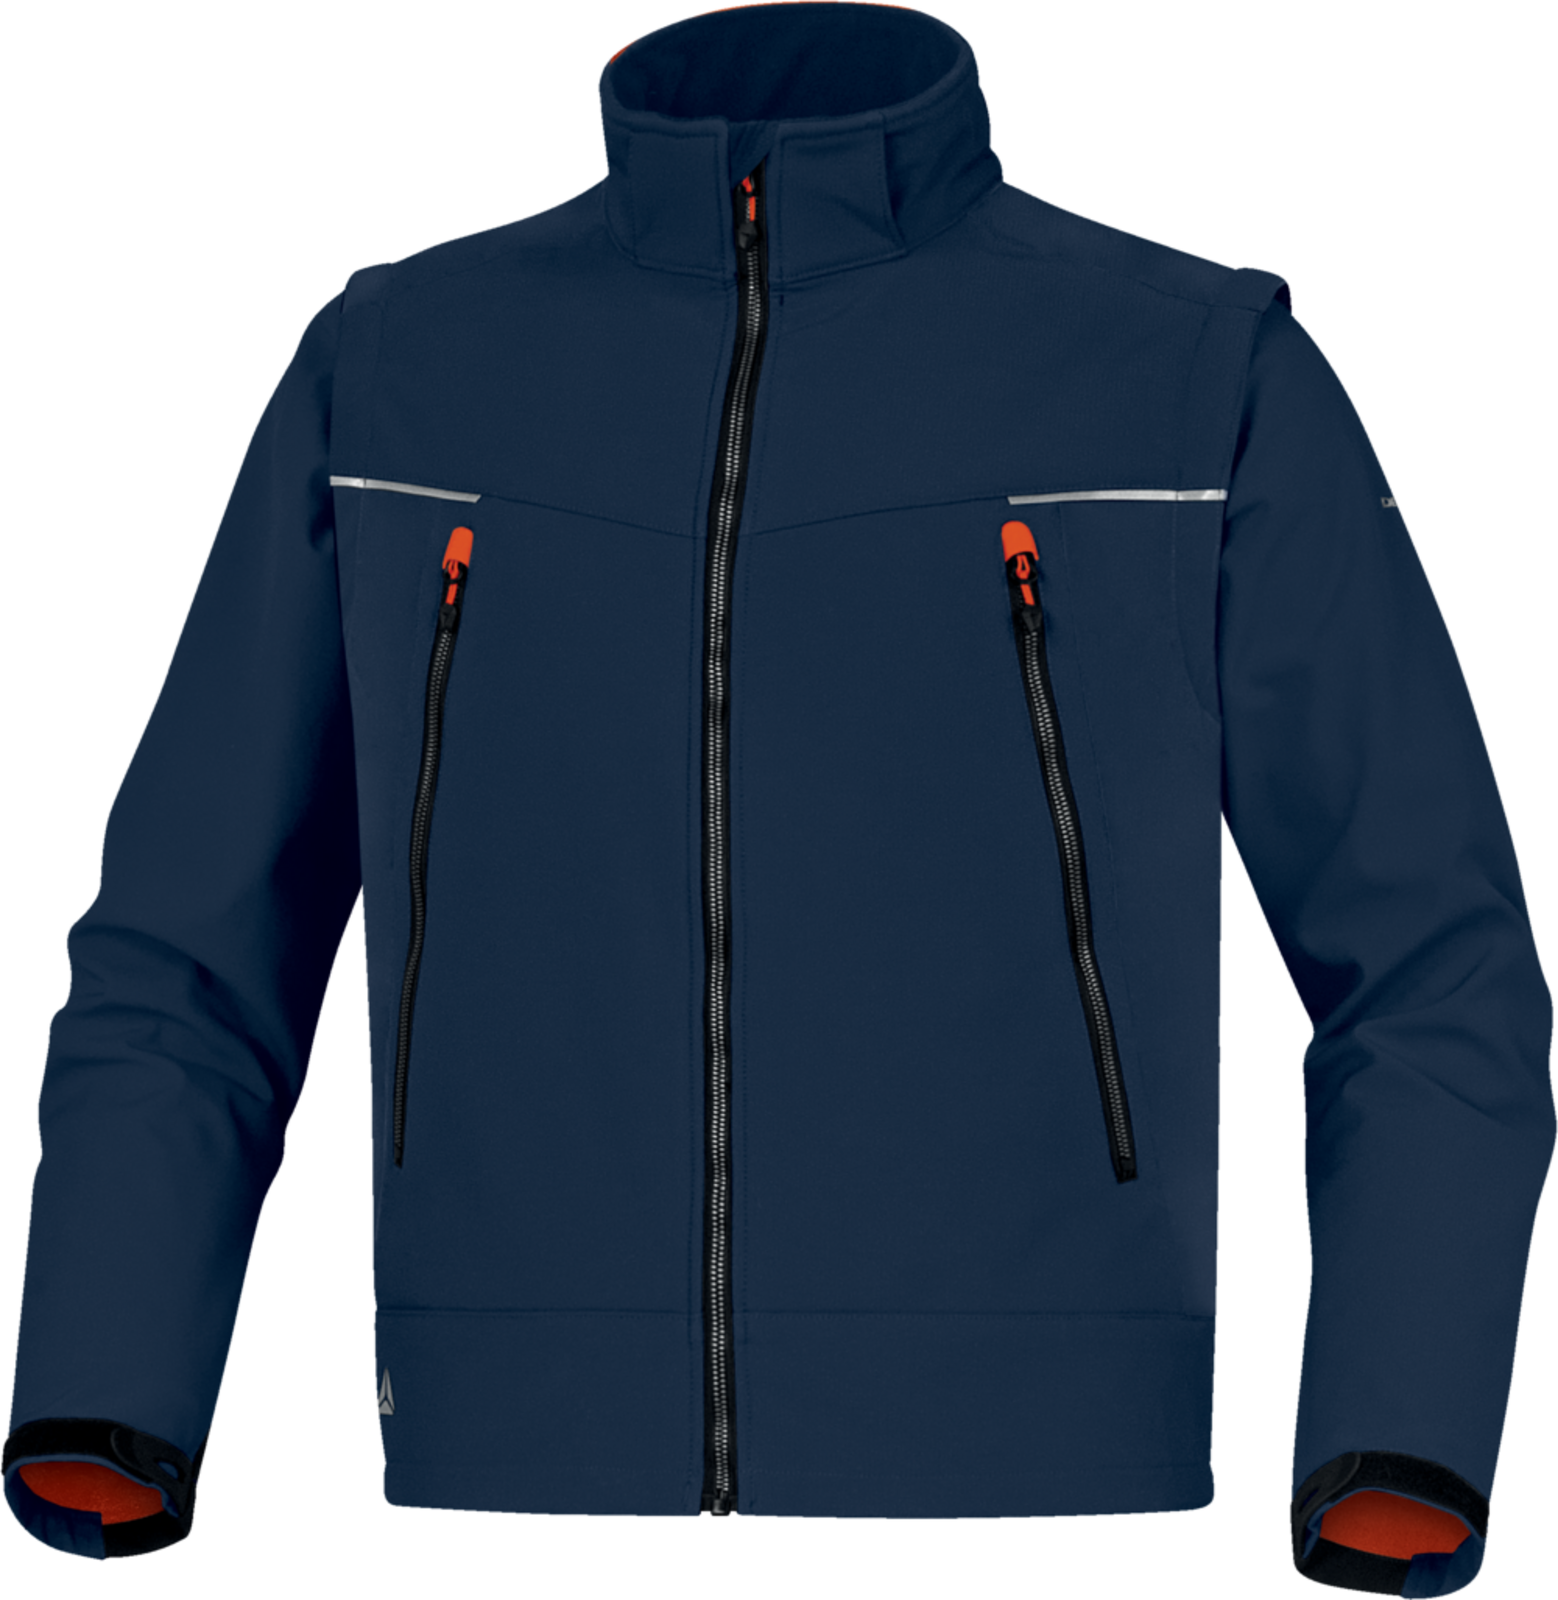 Softshellová bunda Delta Plus Orsa 2v1 - veľkosť: M, farba: námornícka modrá/oranžová